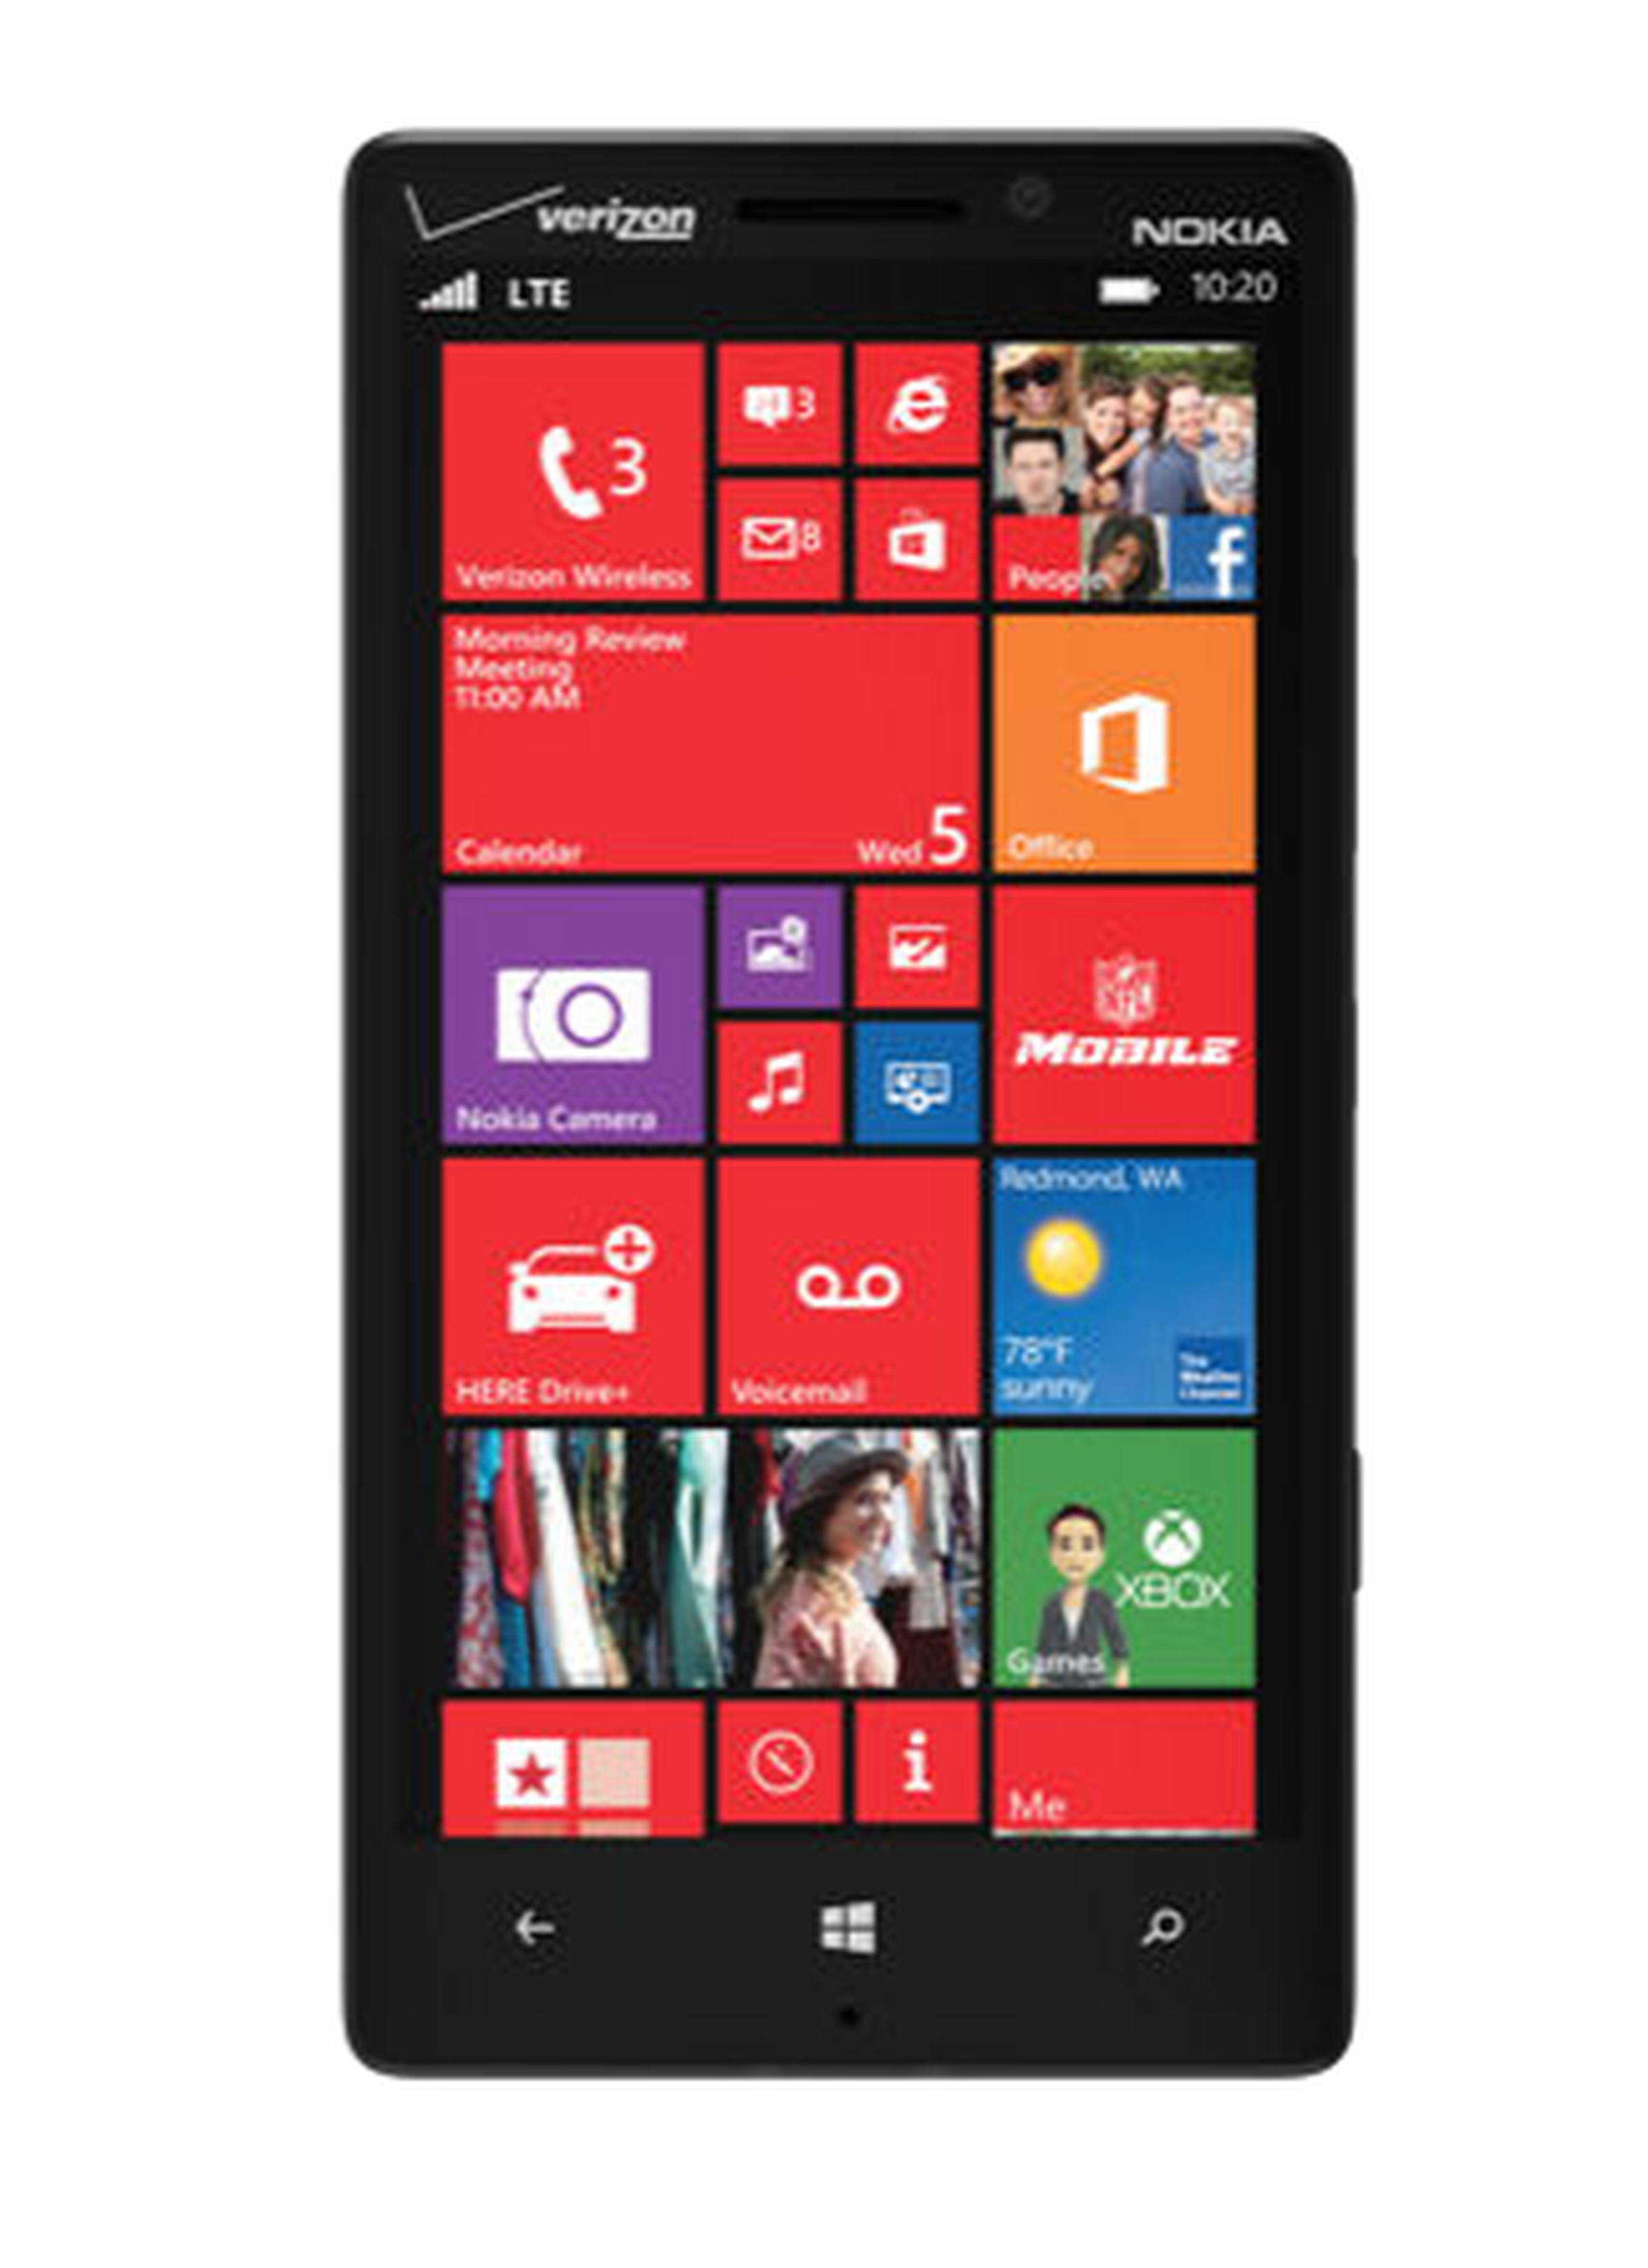 Nokia Lumia Icon press photos